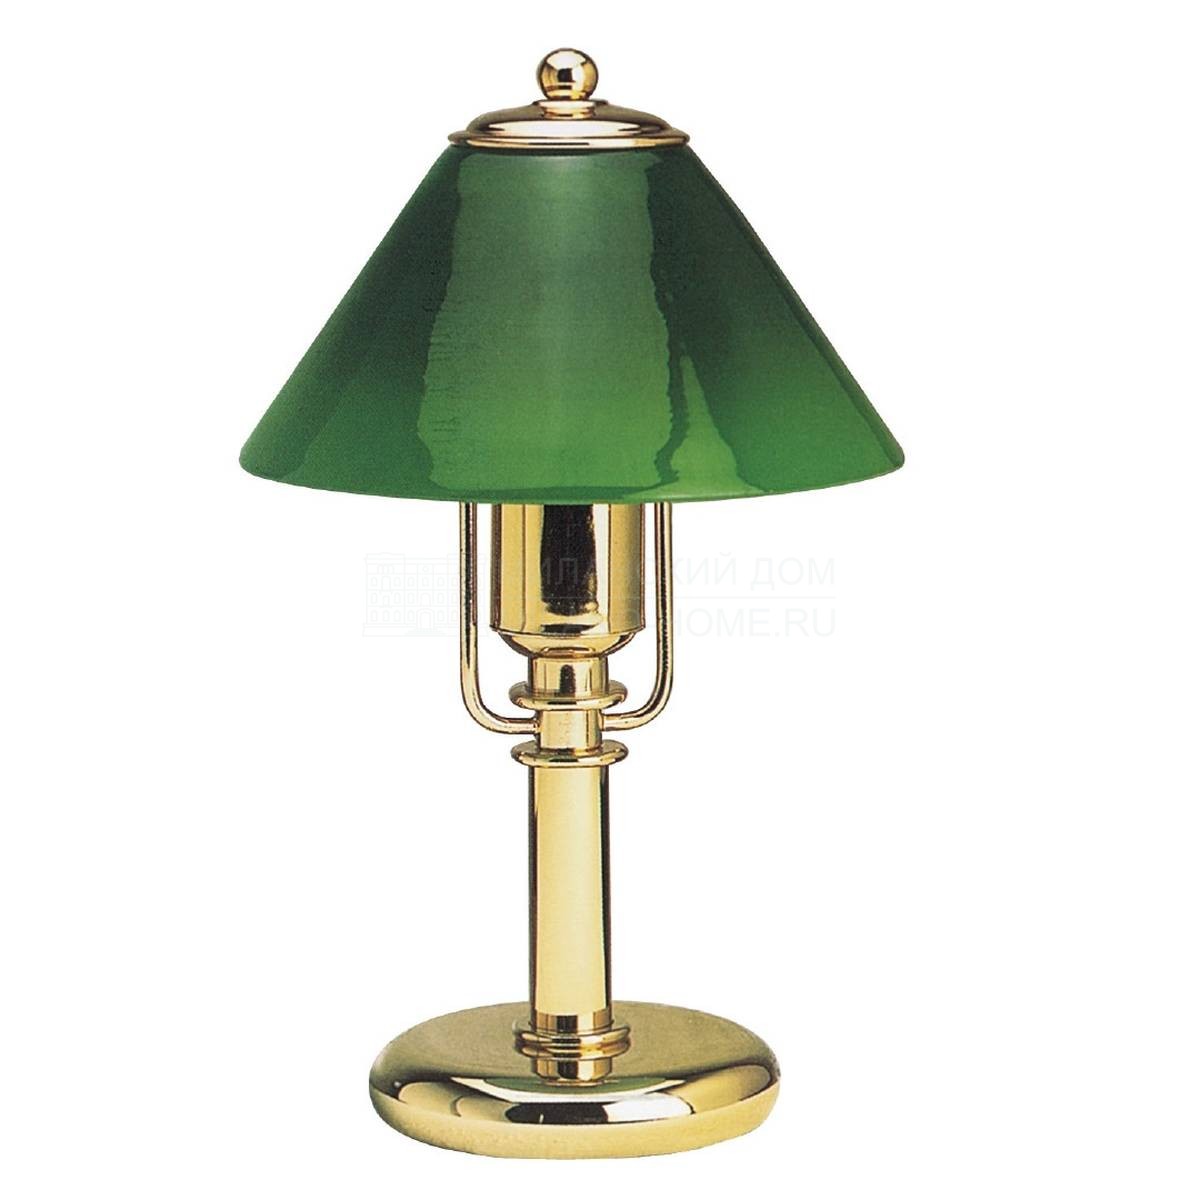 Настольная лампа ORION Art. n 91 LA/P из Италии фабрики CAROTI